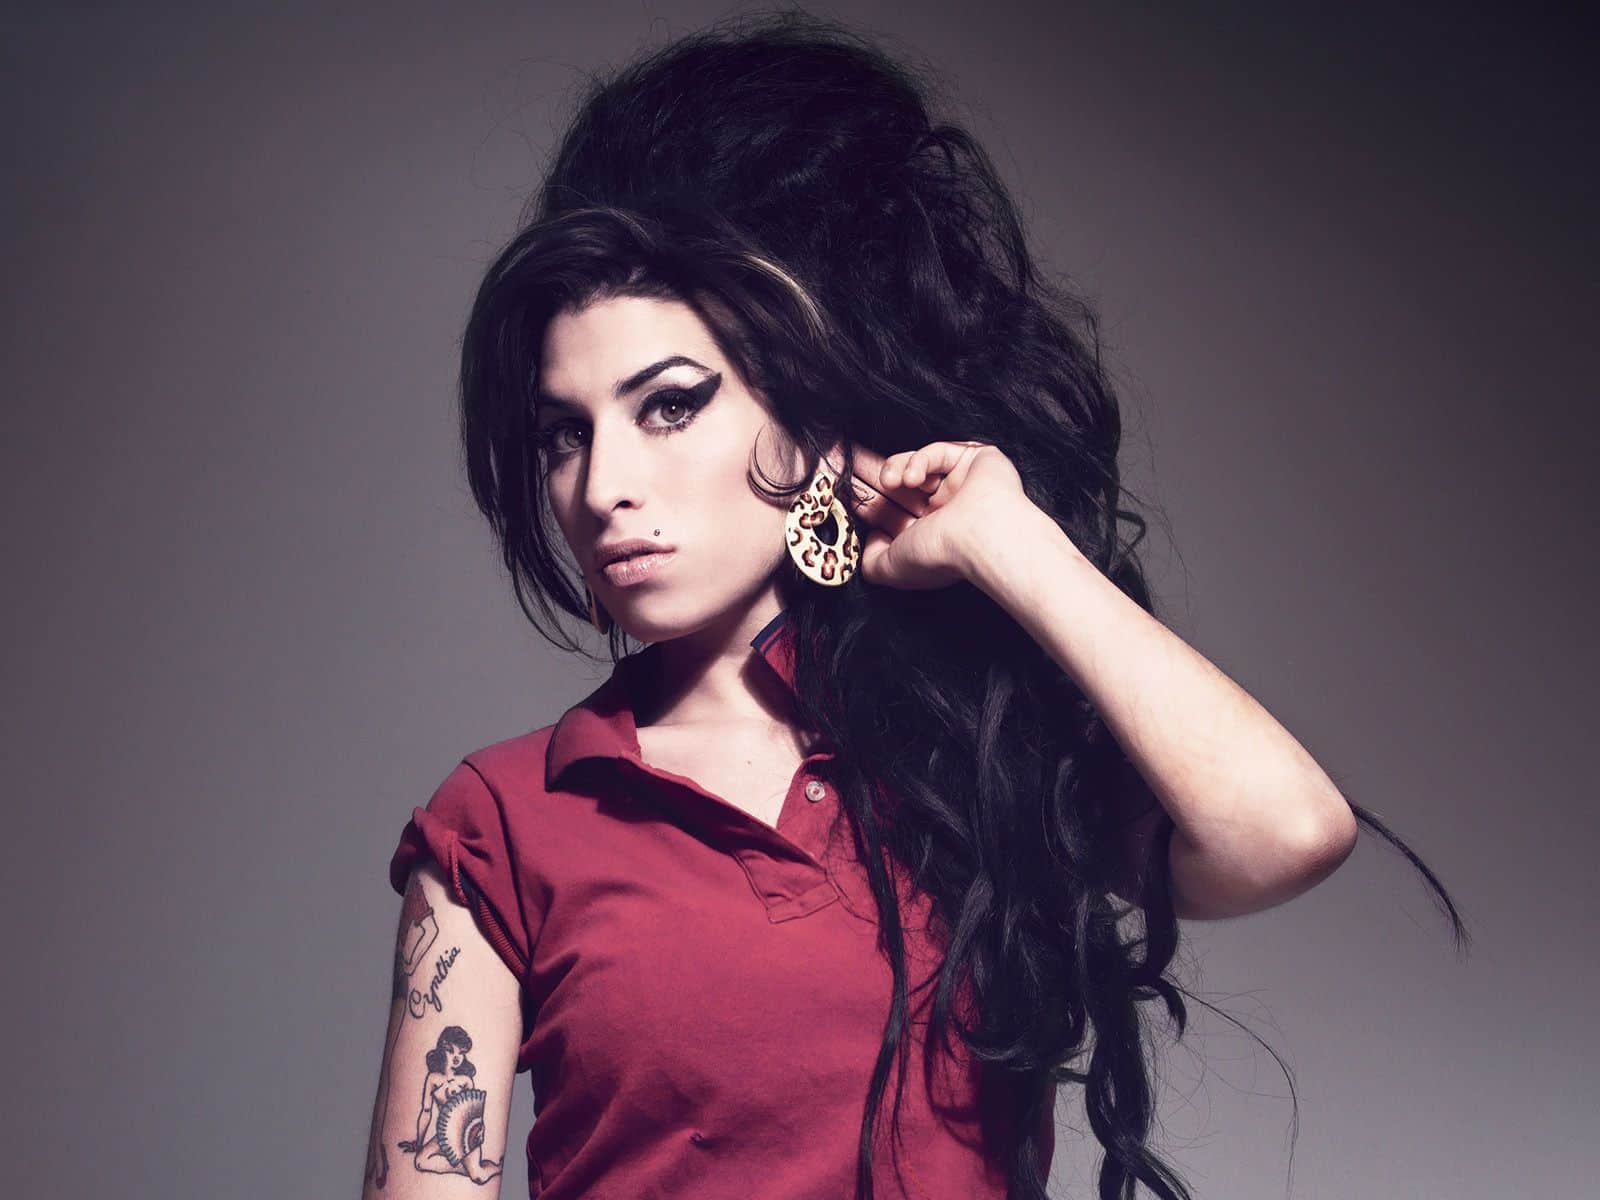 Pai diz que vê fantasma de Amy Winehouse